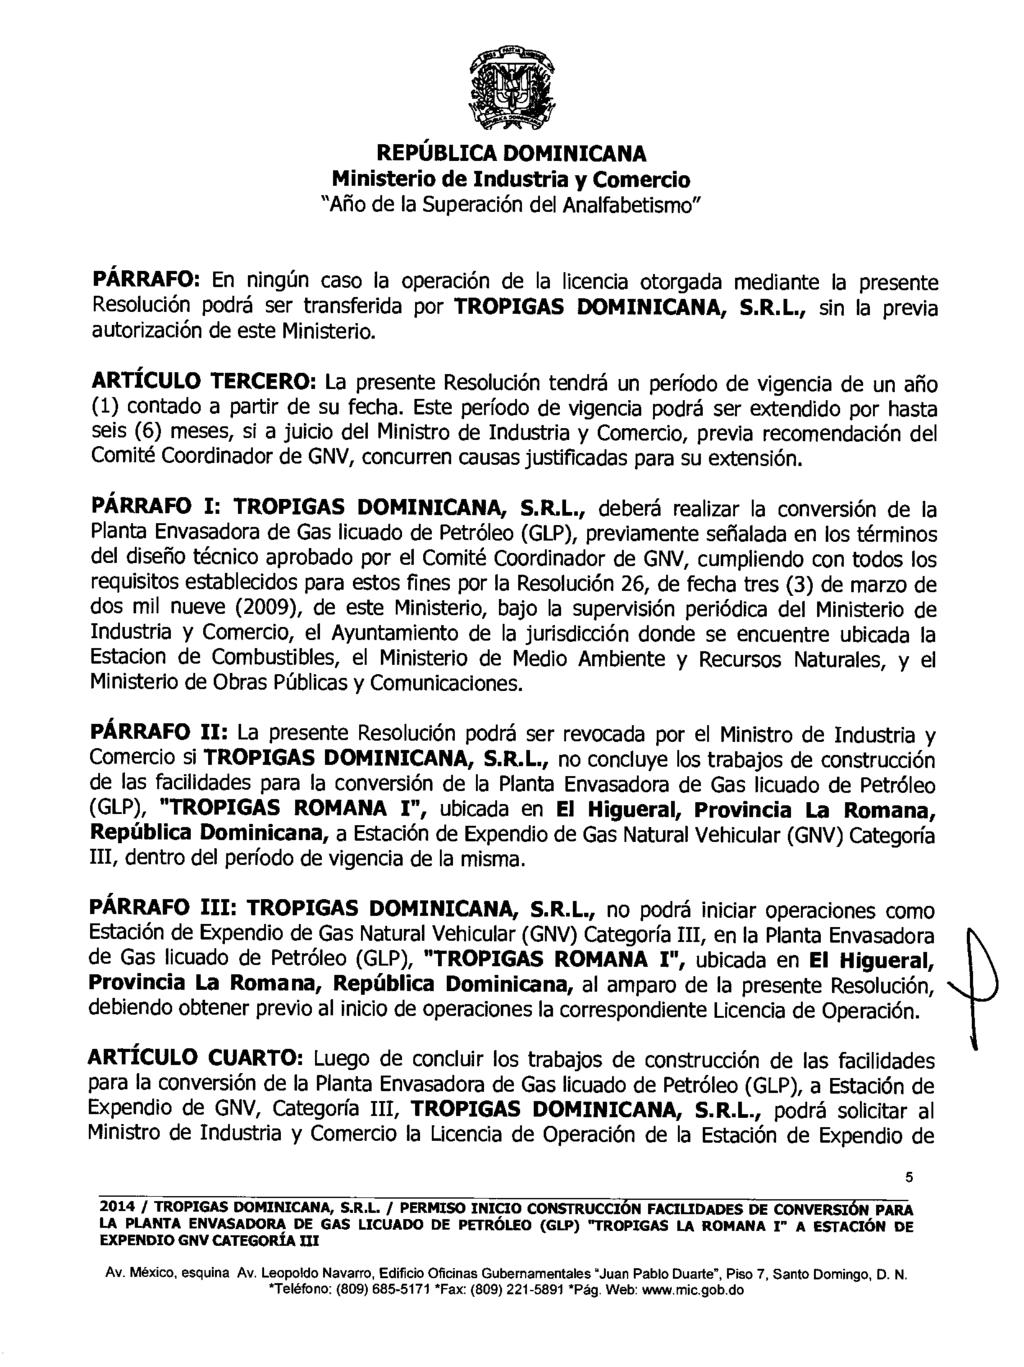 PÁRRAFO: En ningún caso la operación de la licencia otorgada mediante la presente Resolución podrá ser transferida por TROPIGAS DOMINICANA, S.R.L., sin la previa autorización de este Ministerio.